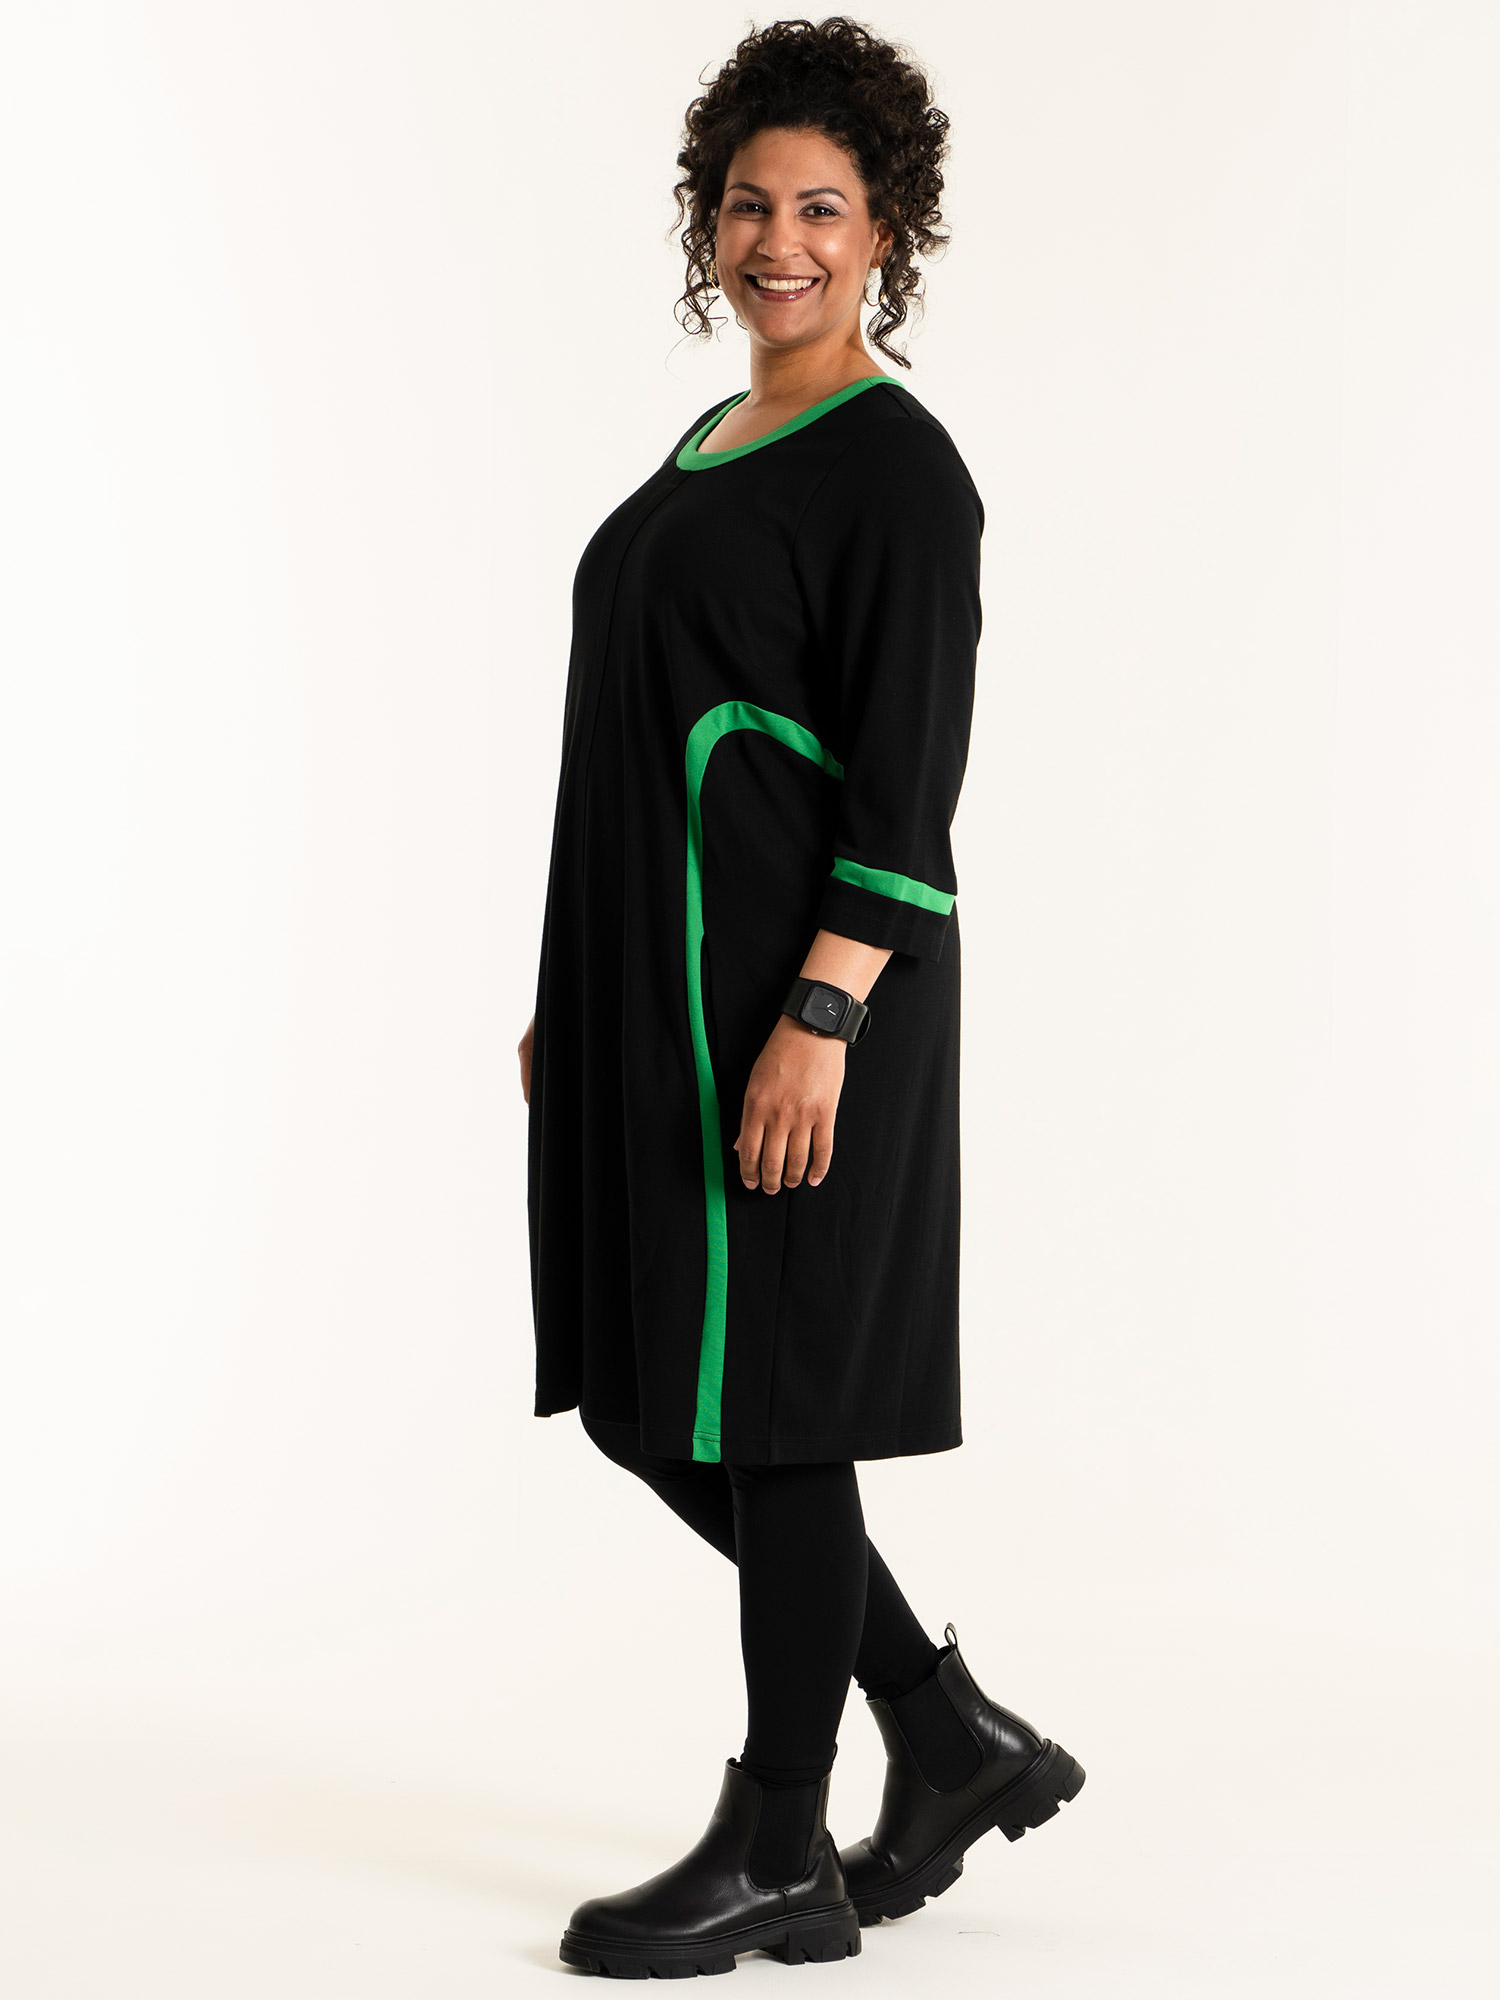 JOAN - Sort kjole i kraftig kvalitet med grønne detaljer fra Studio